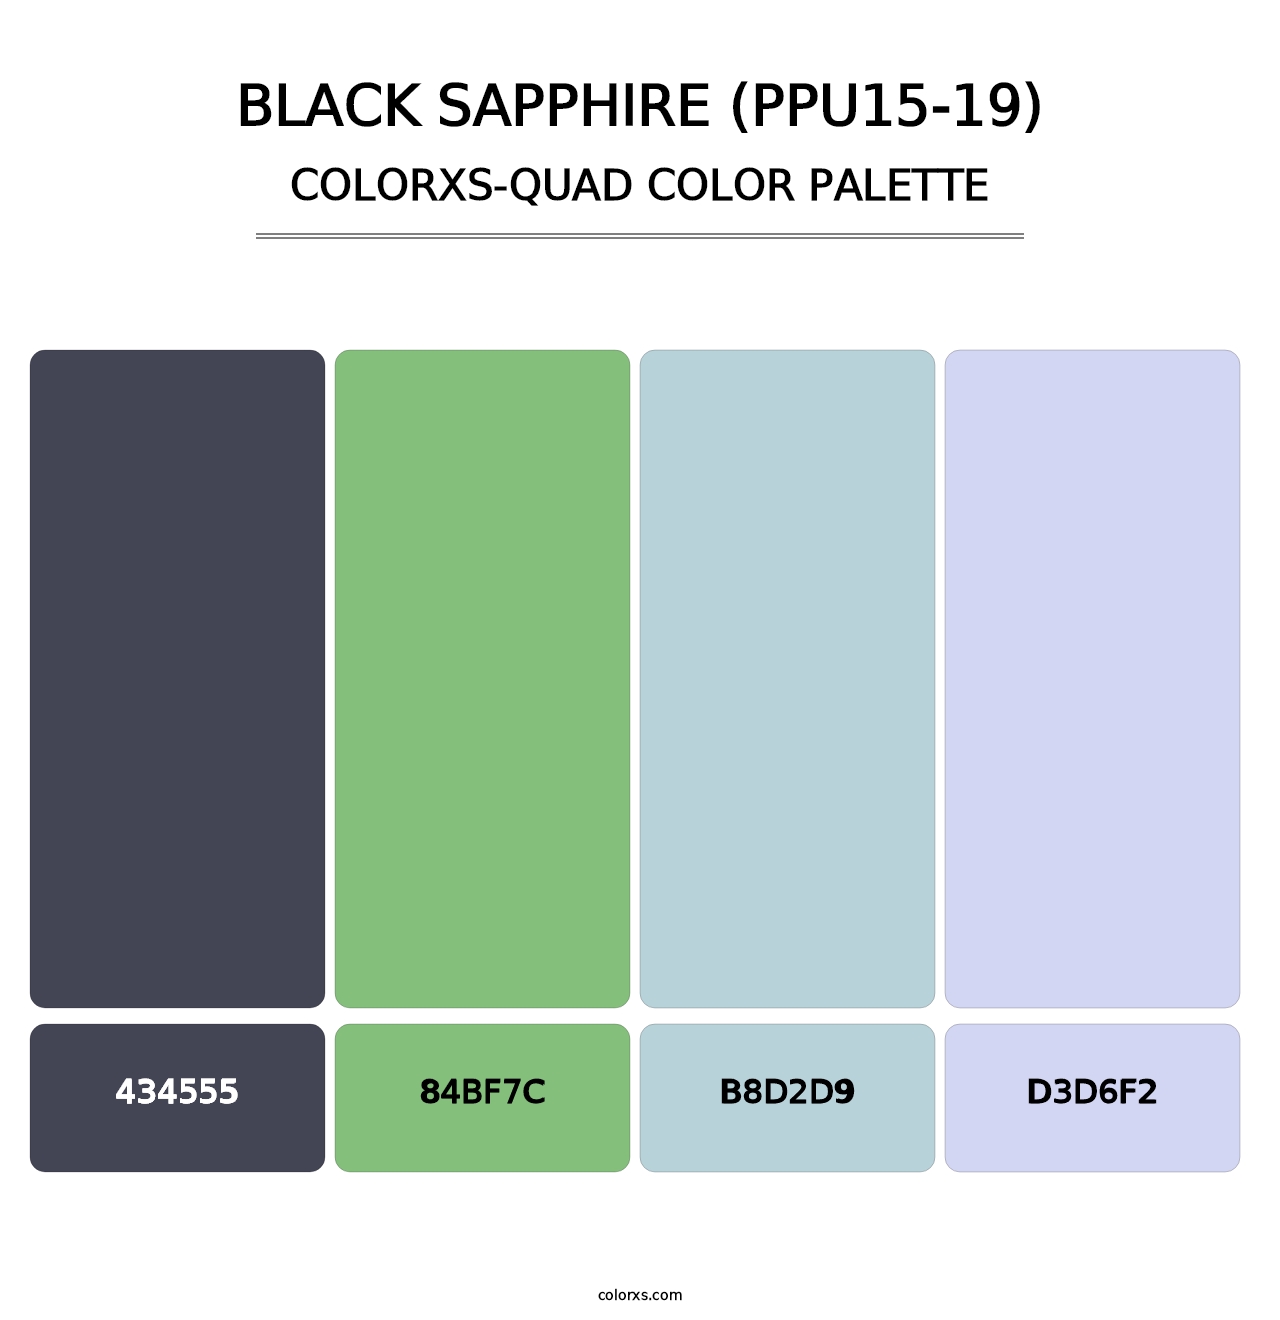 Black Sapphire (PPU15-19) - Colorxs Quad Palette